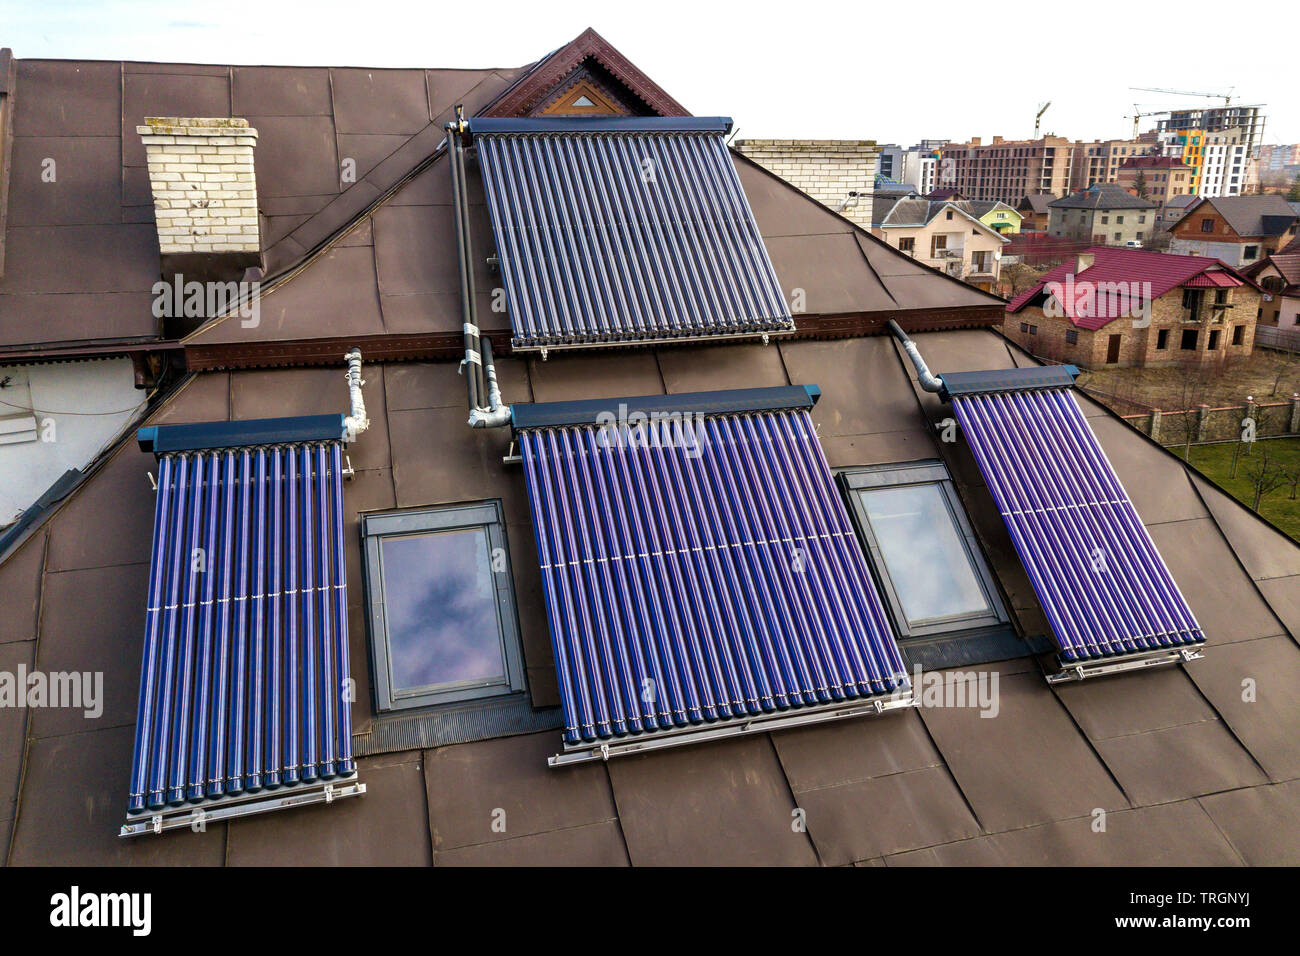 Solare Wasser-Heizung-System auf haus dach. Boiler, alternative ökologische  Sonne Energie generator Stockfotografie - Alamy